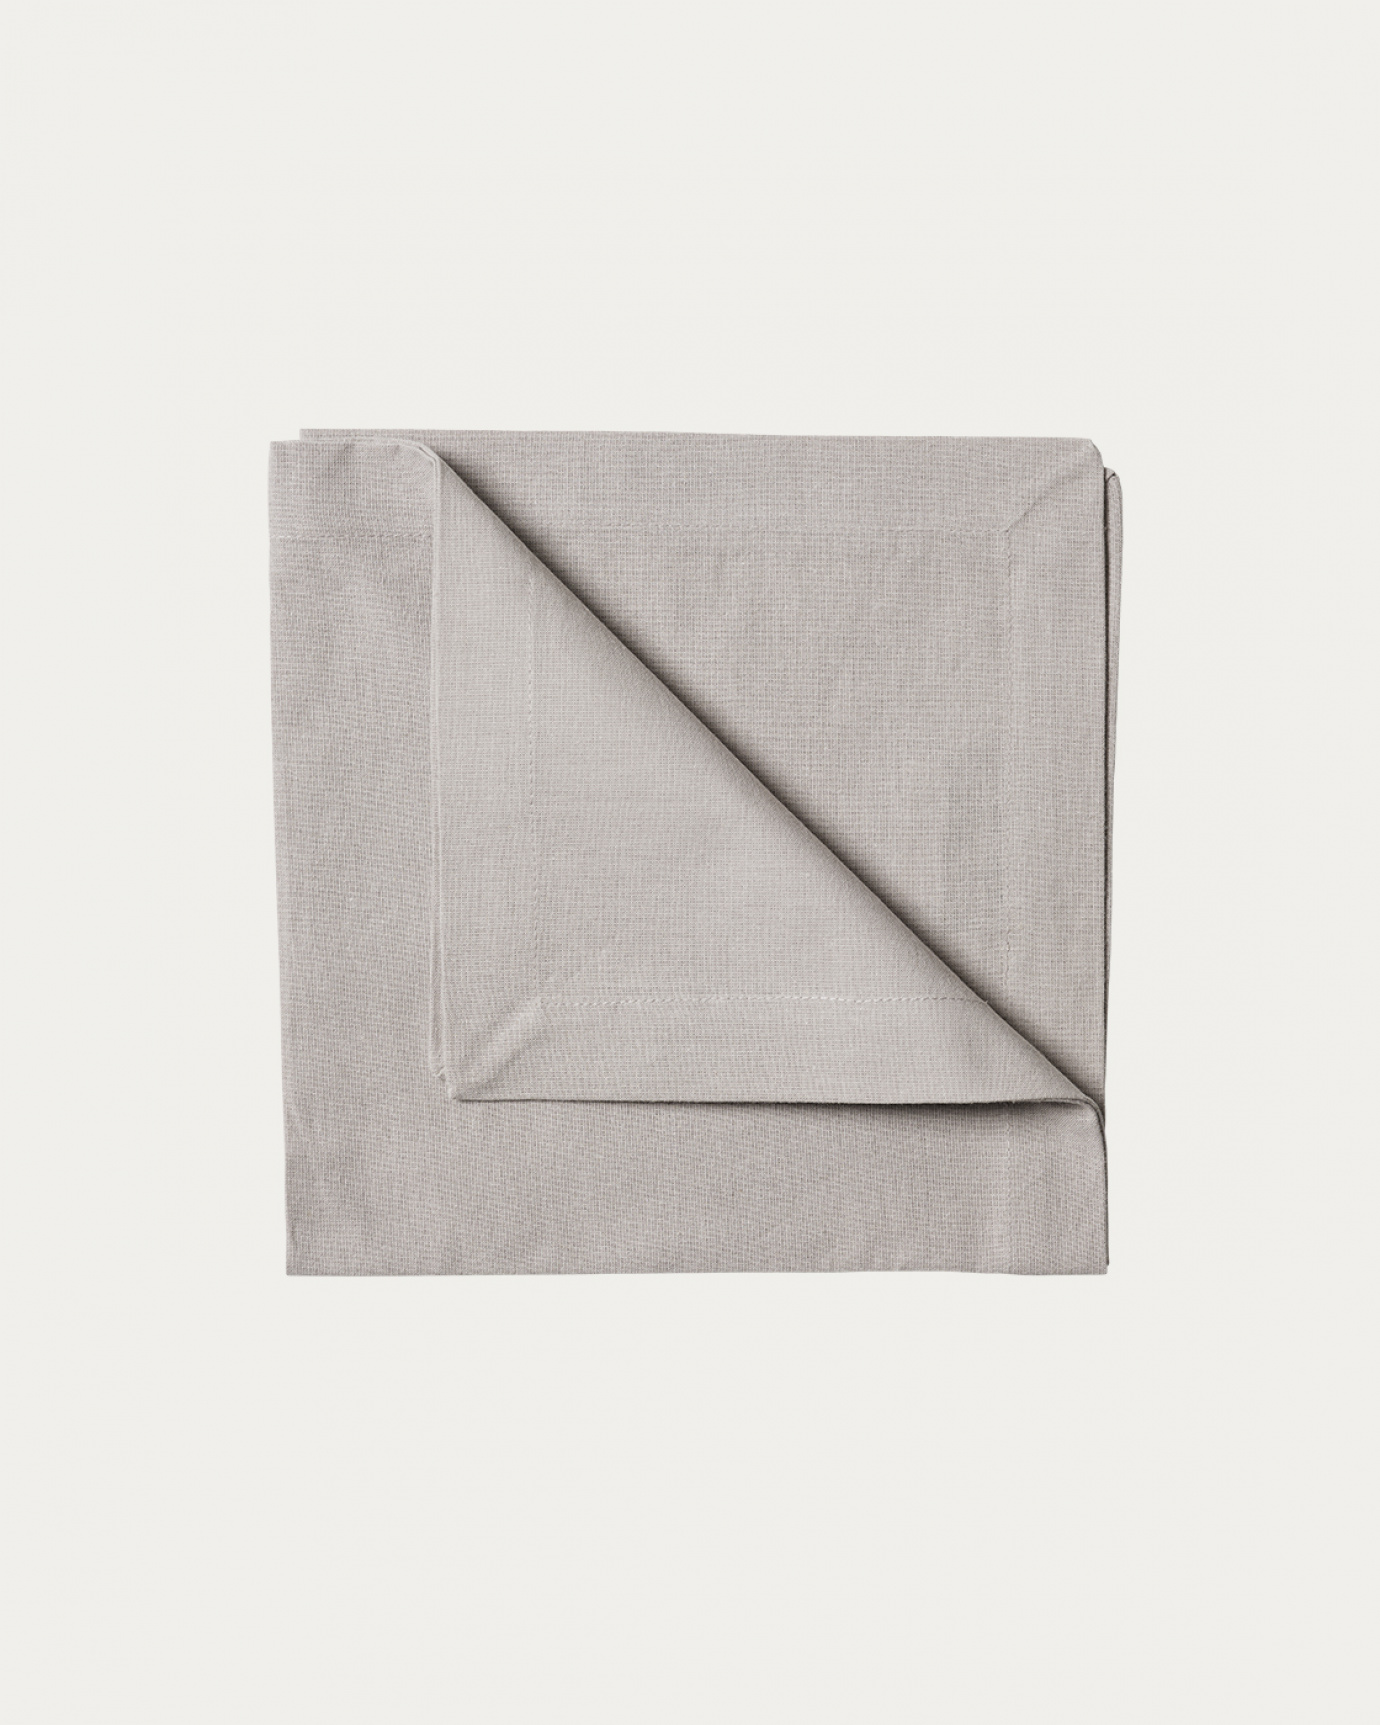 Image du produit serviette de table ROBERT gris perle en coton doux de LINUM DESIGN. Taille 45 x 45 cm et vendu en lot de 4.